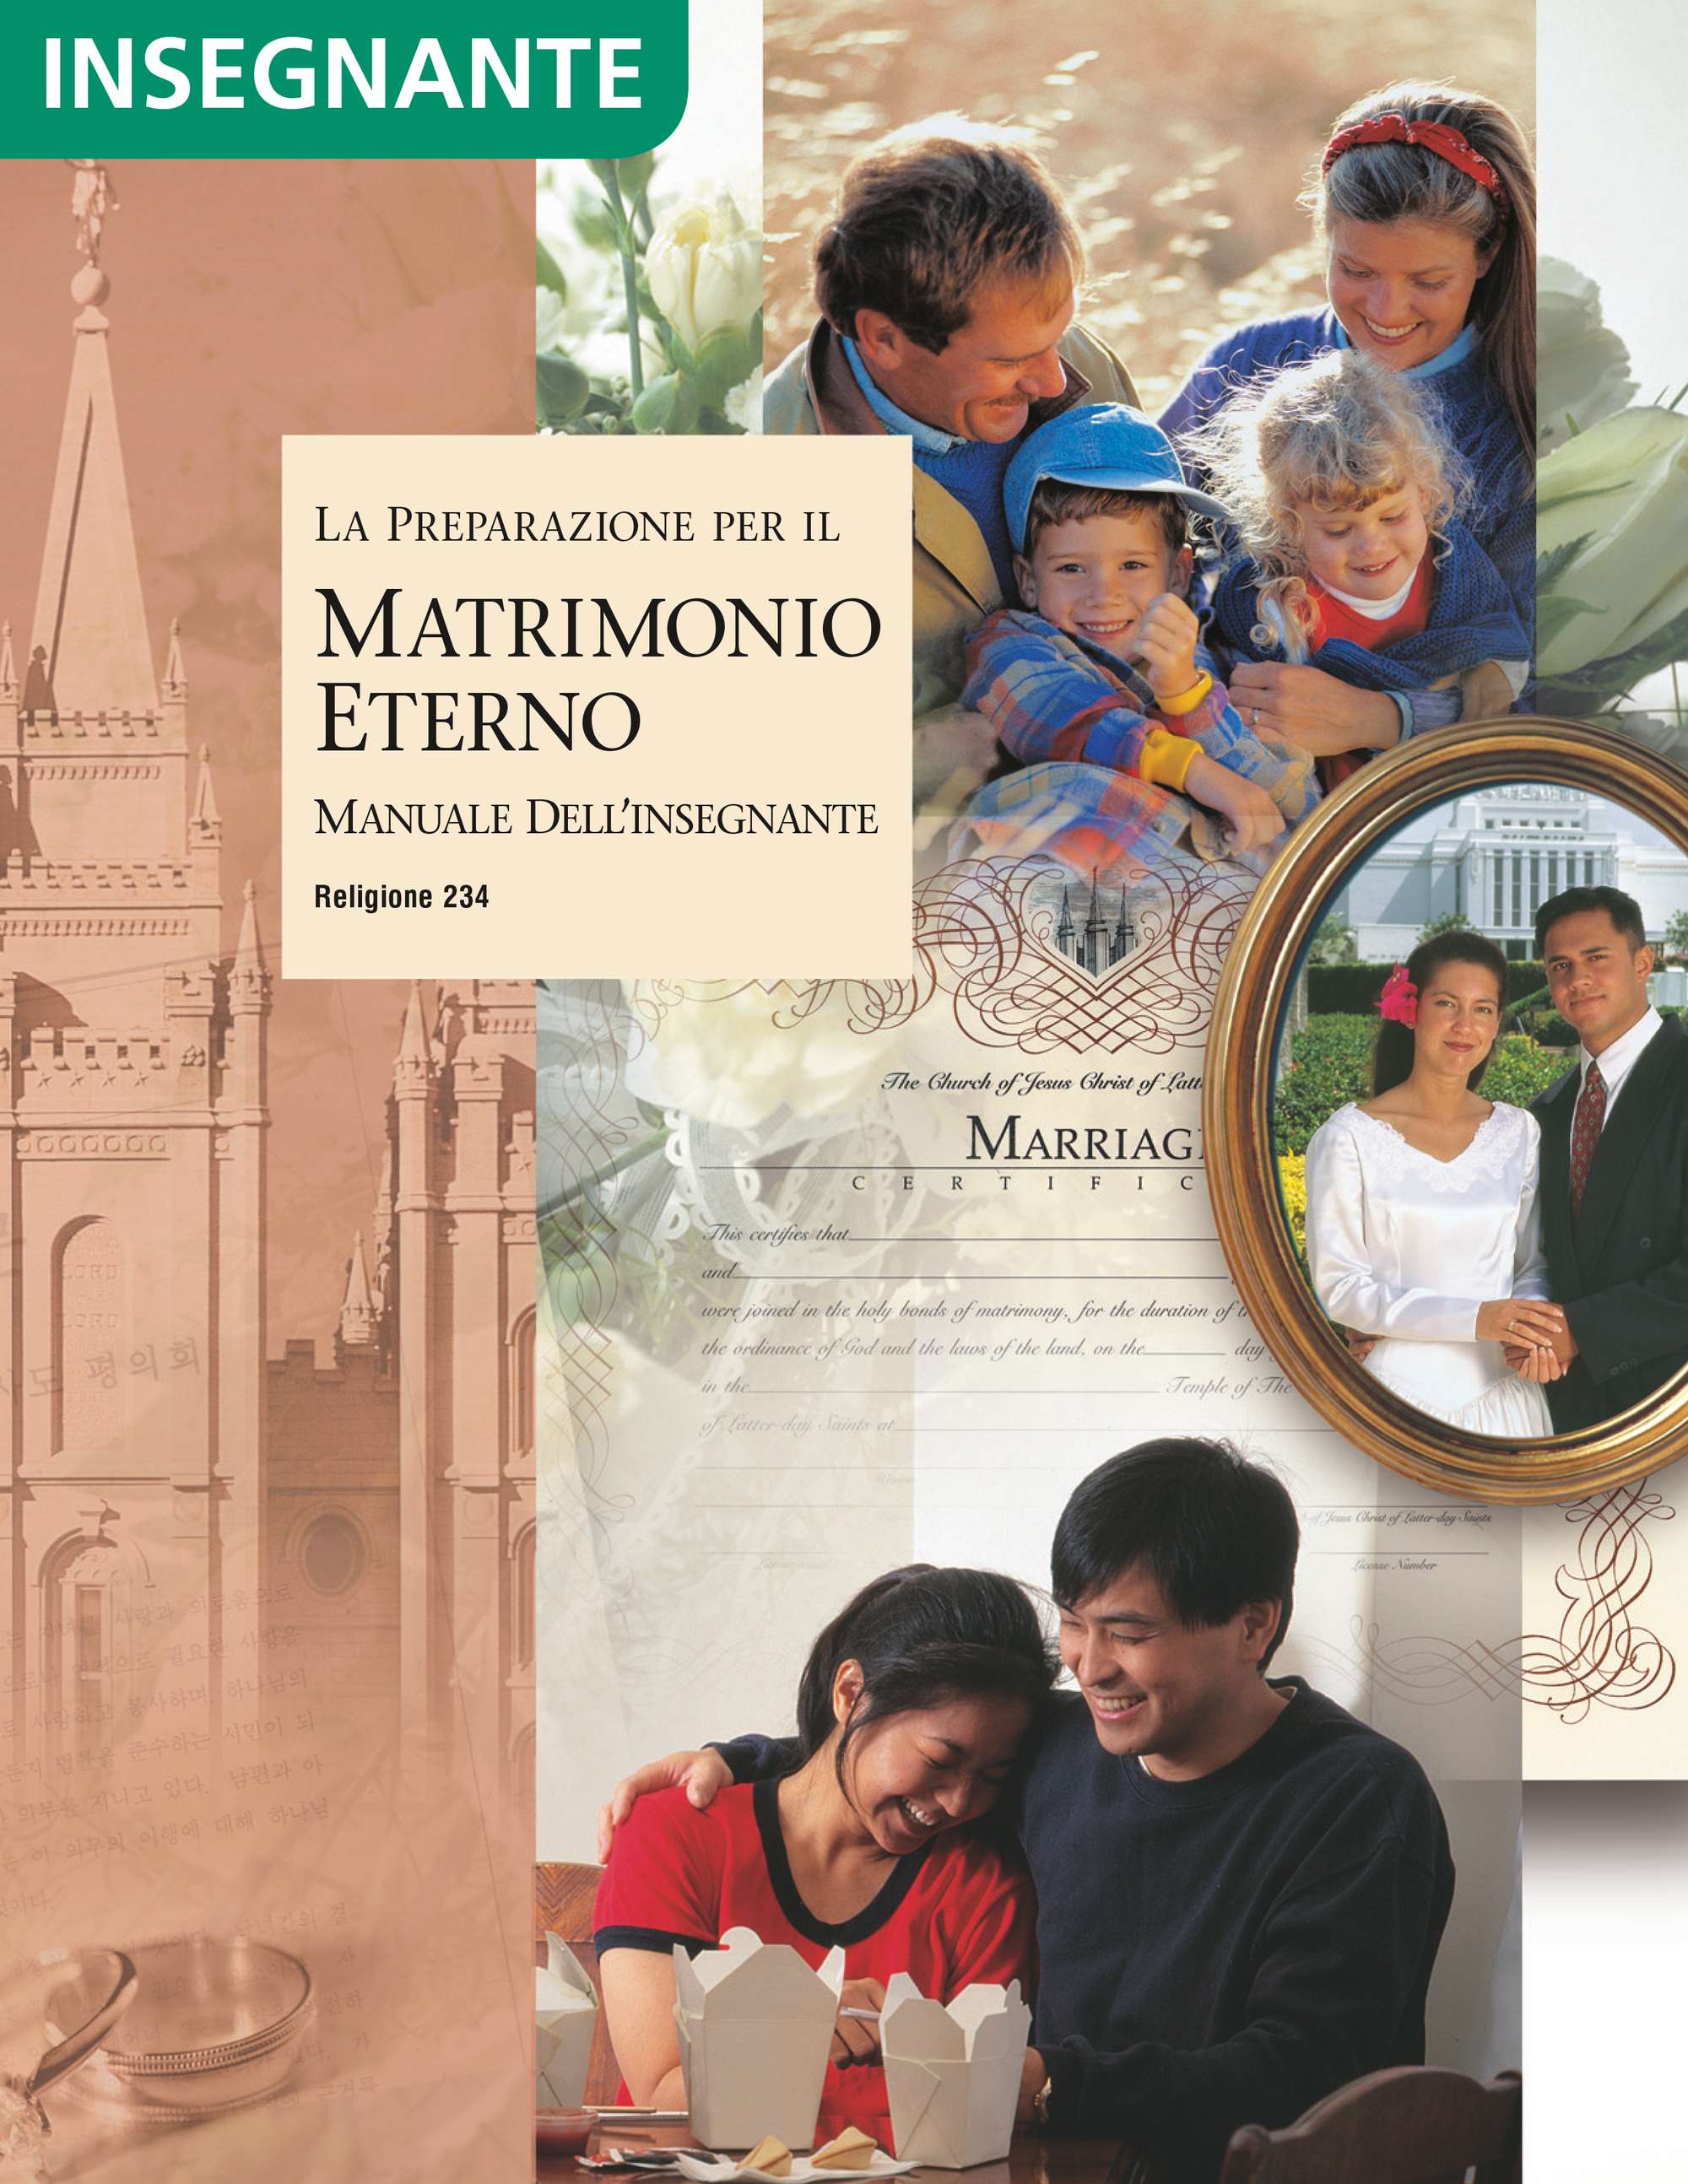 La preparazione per il matrimonio eterno – Manuale dell’insegnante (Religione 234)